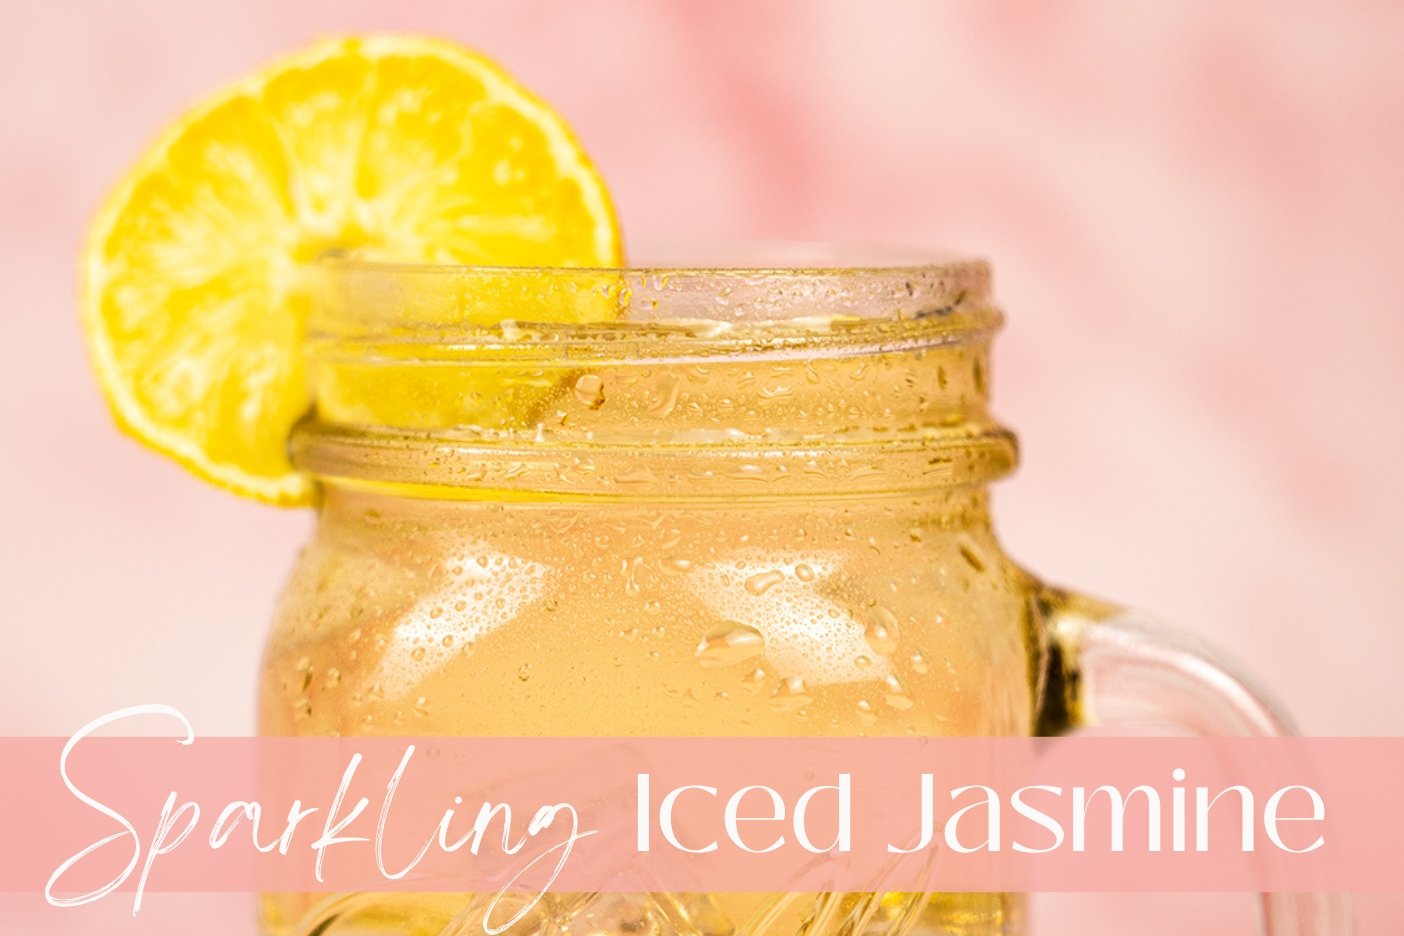 Sparkling Iced Jasmine - Full Leaf Tea Company